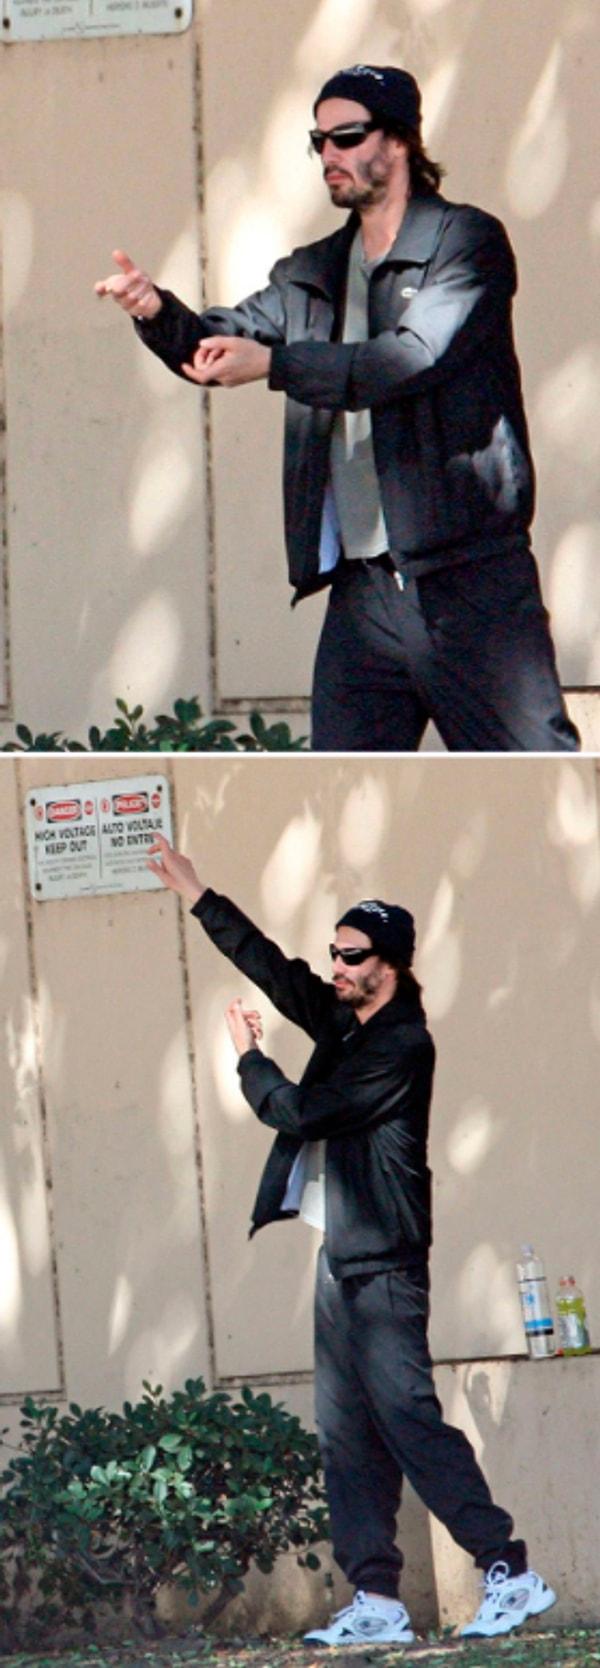 26. "Keanu Reeves gölge boksu yapıyor."